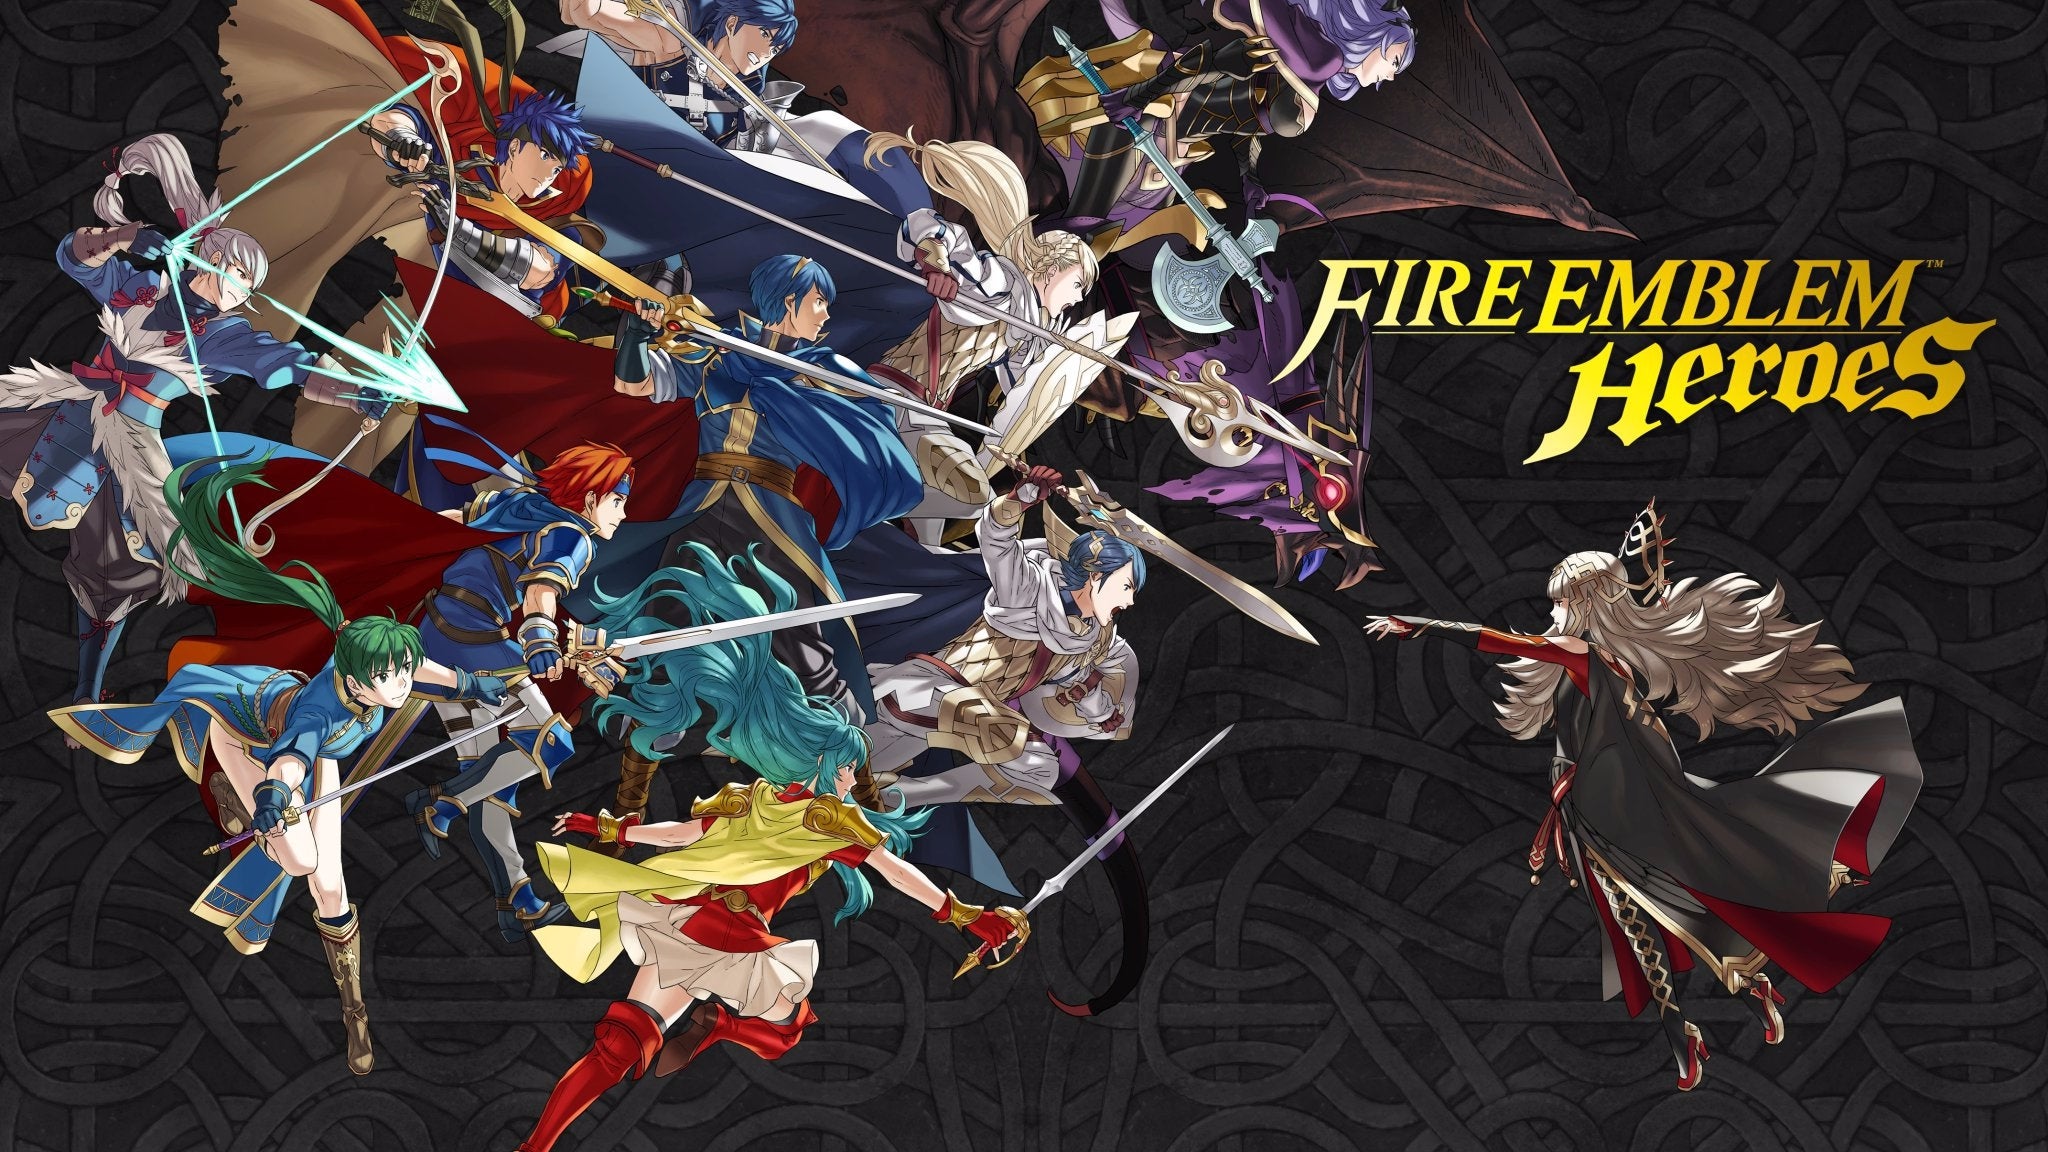 Immagine di Fire Emblem Heroes, disponibili quattro nuovi eroi